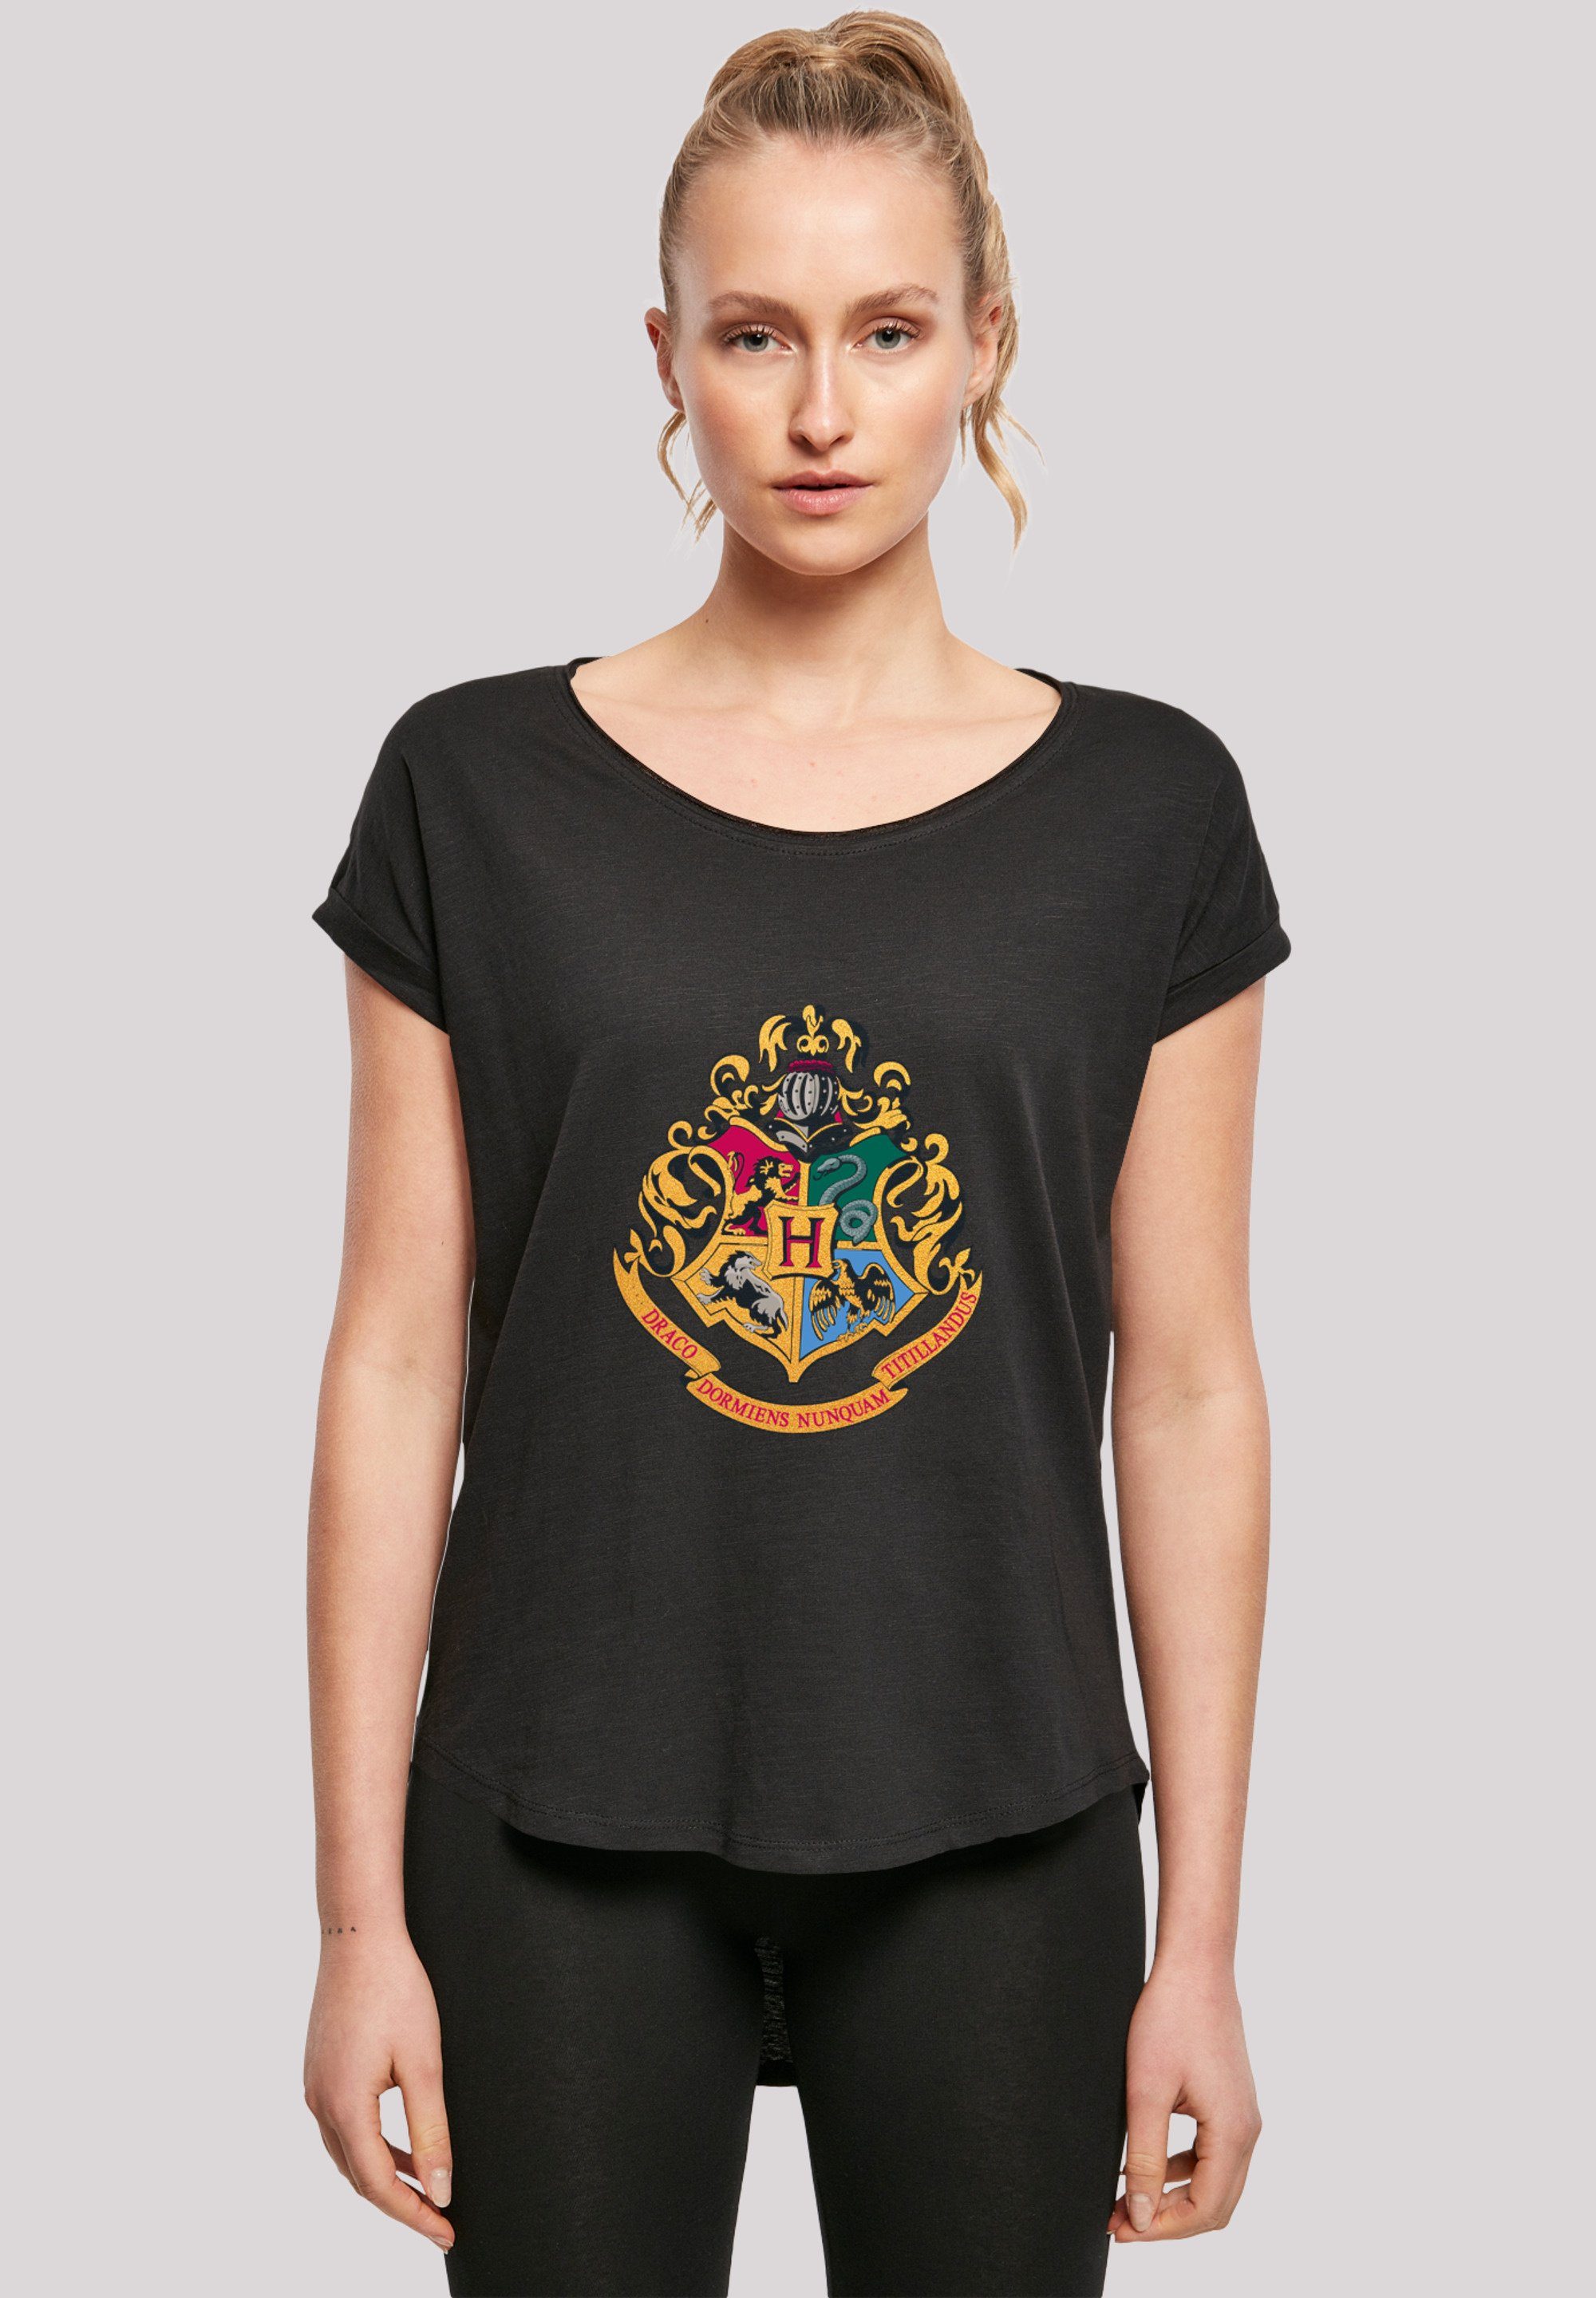 Potter Sehr F4NT4STIC T-Shirt Baumwollstoff weicher Tragekomfort hohem mit Crest Print, Harry Gold Hogwarts